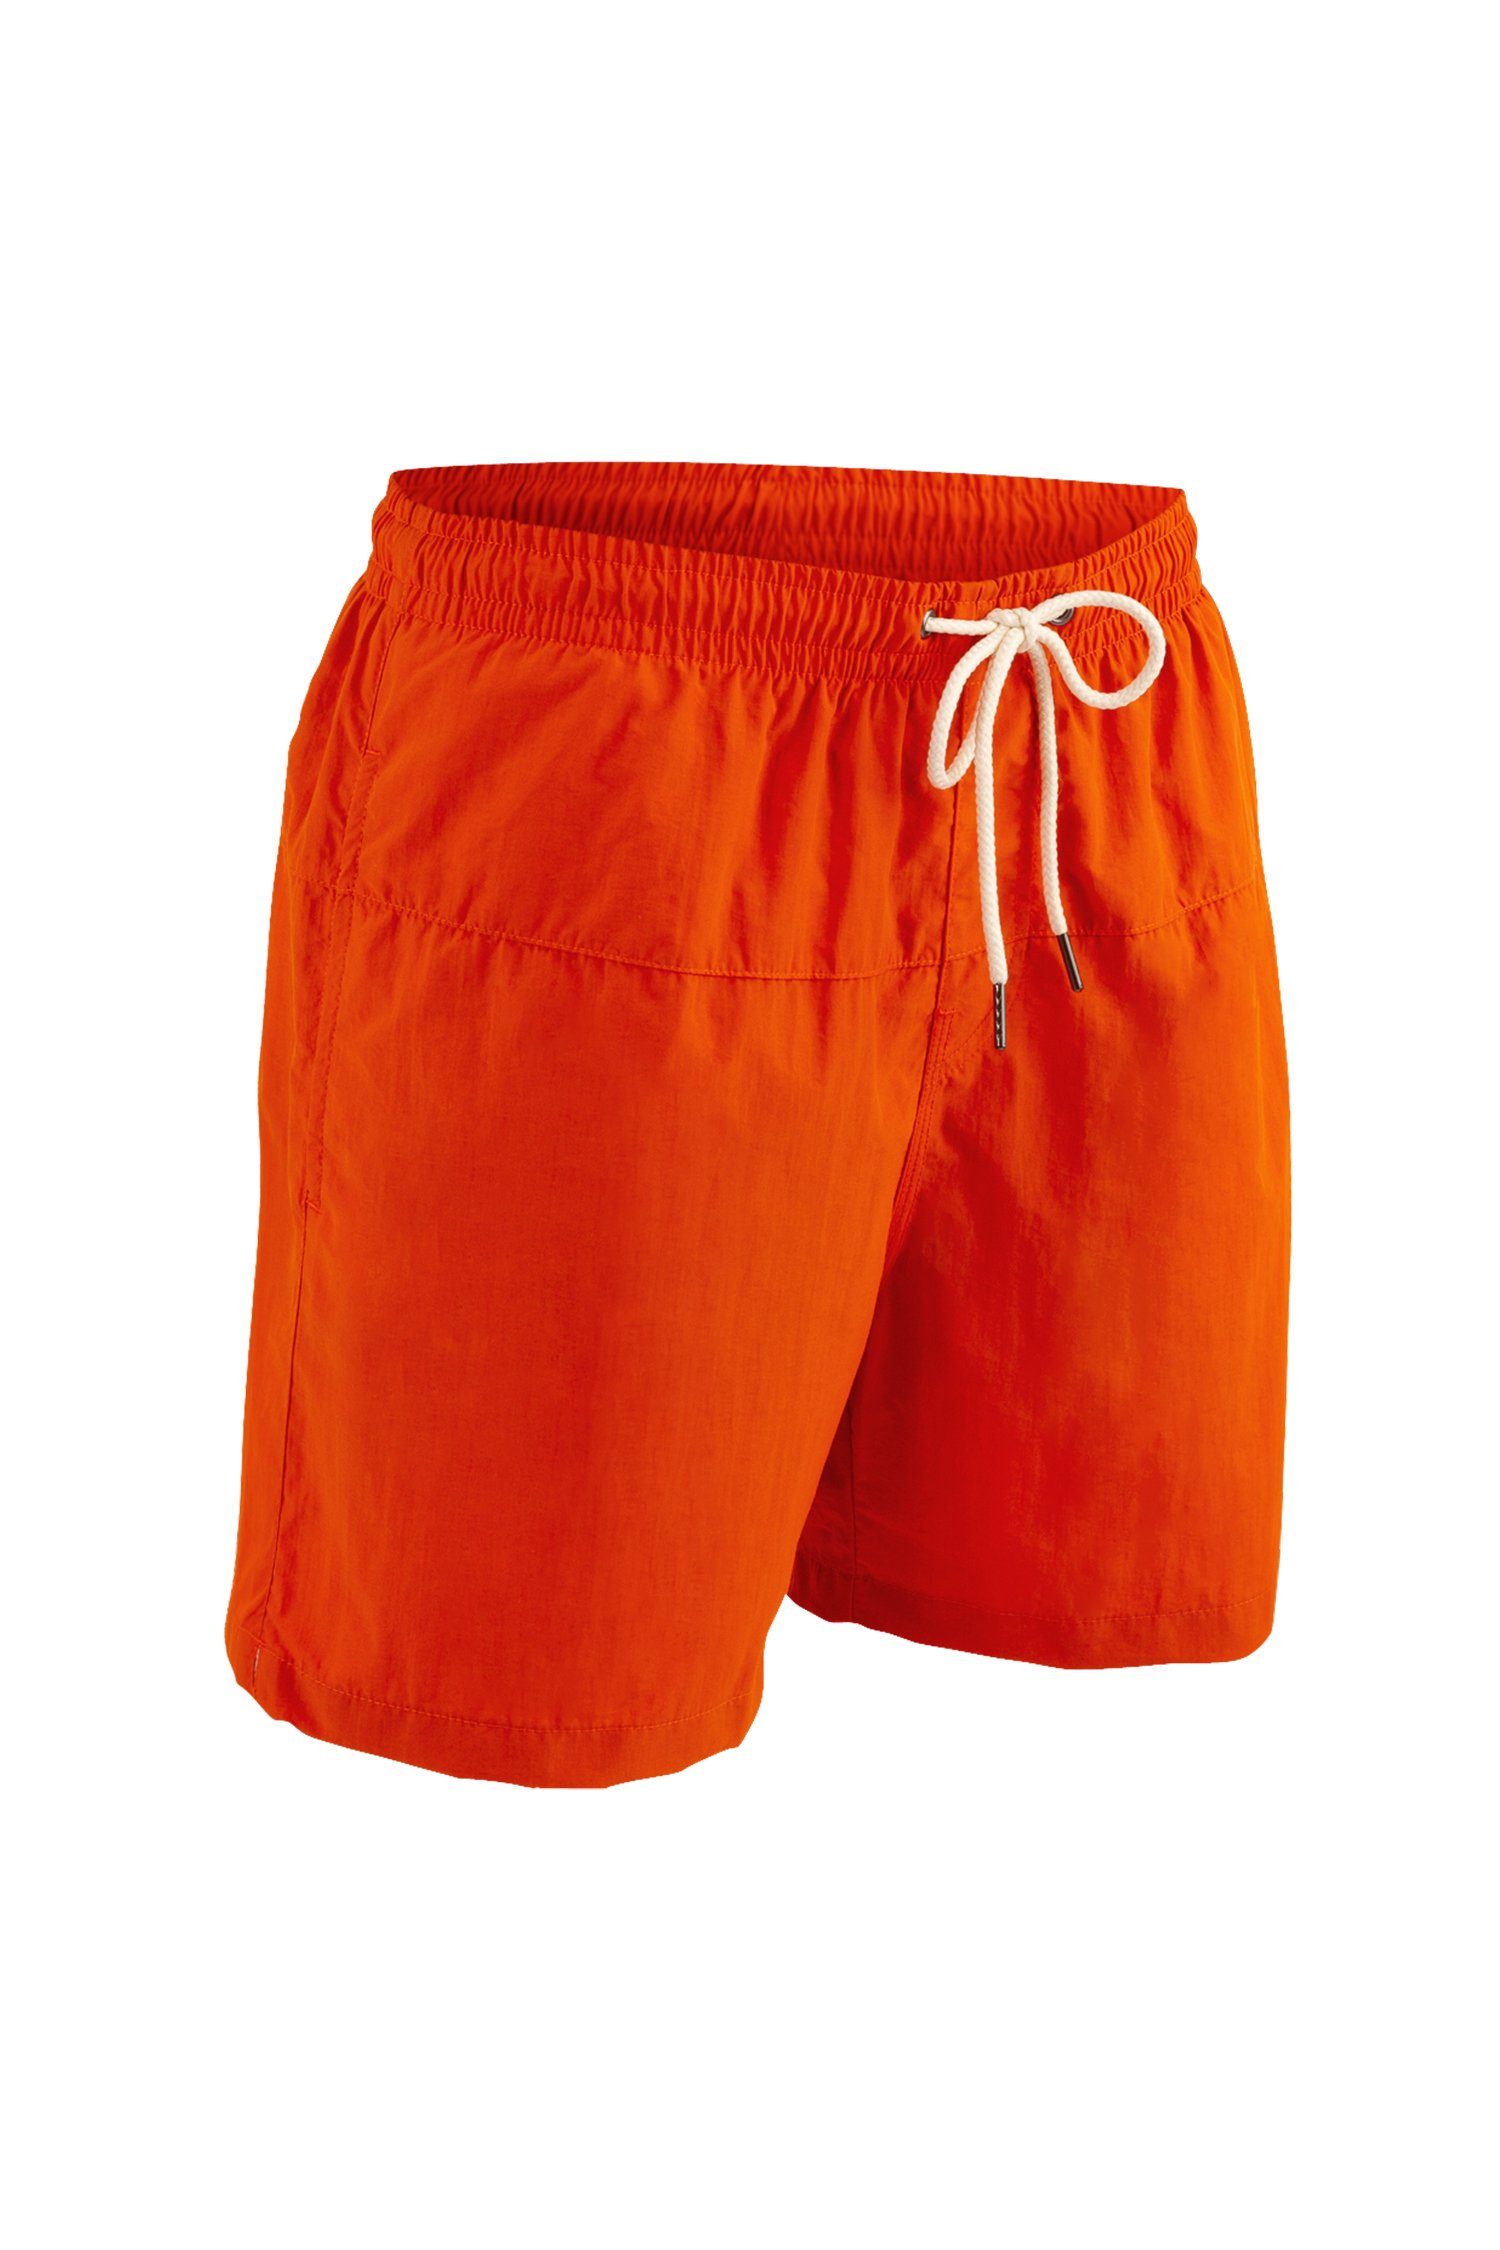 Swim - Tangerine Manufaktur13 Badeshorts Shorts schnelltrocknend Badehosen